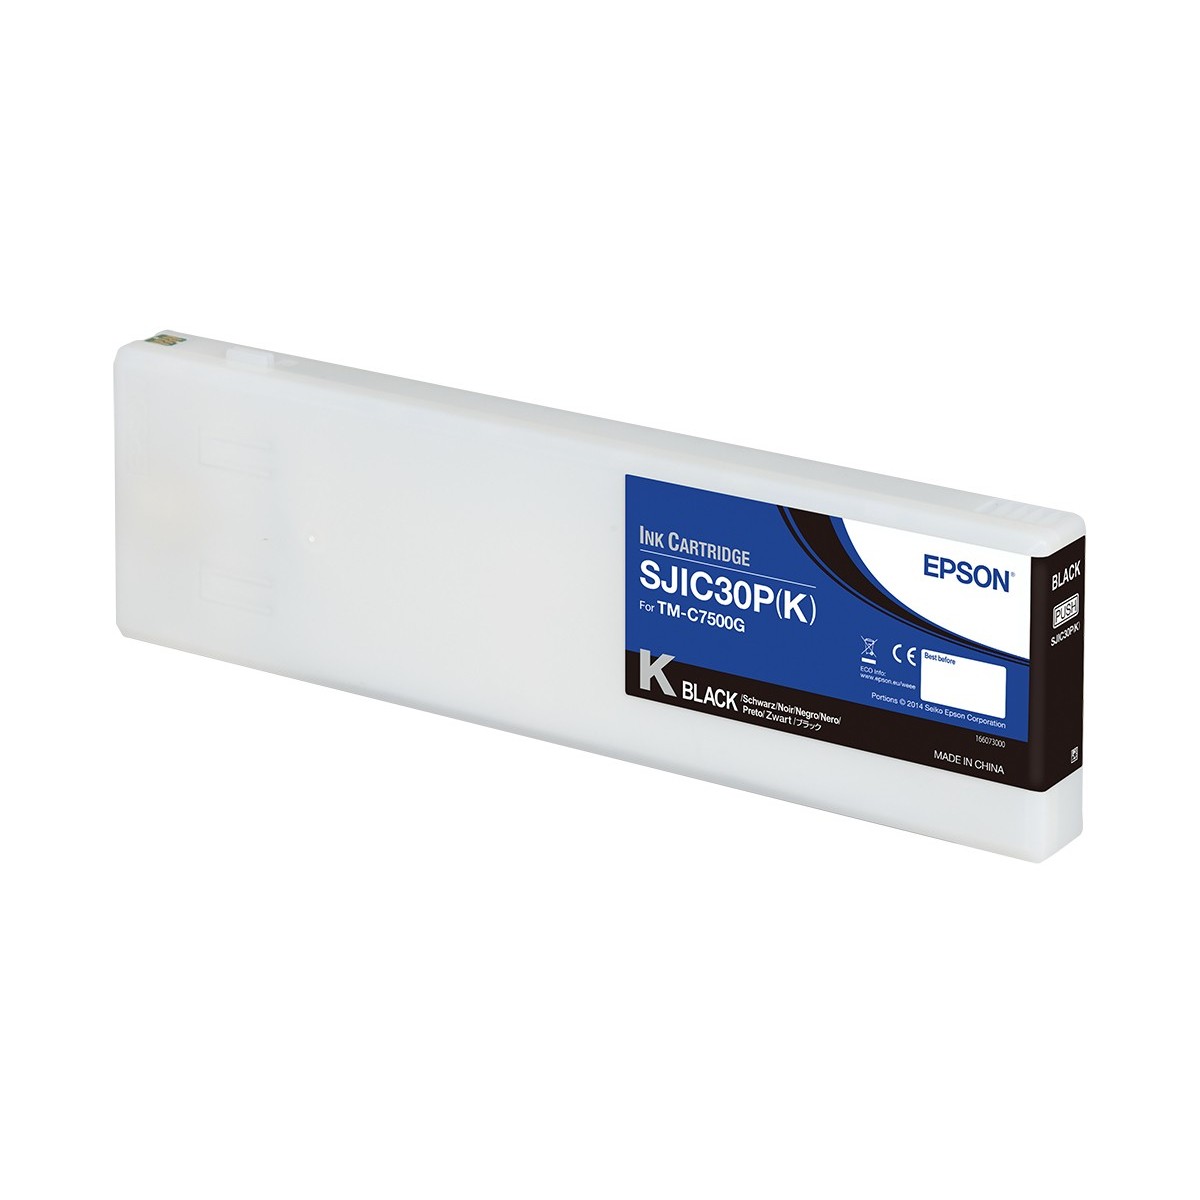 Epson SJIC30P(K): Ink cartridge for ColorWorks C7500G (Black) - Original - Pigment-based ink - Black - Epson - ColorWorks C7500G